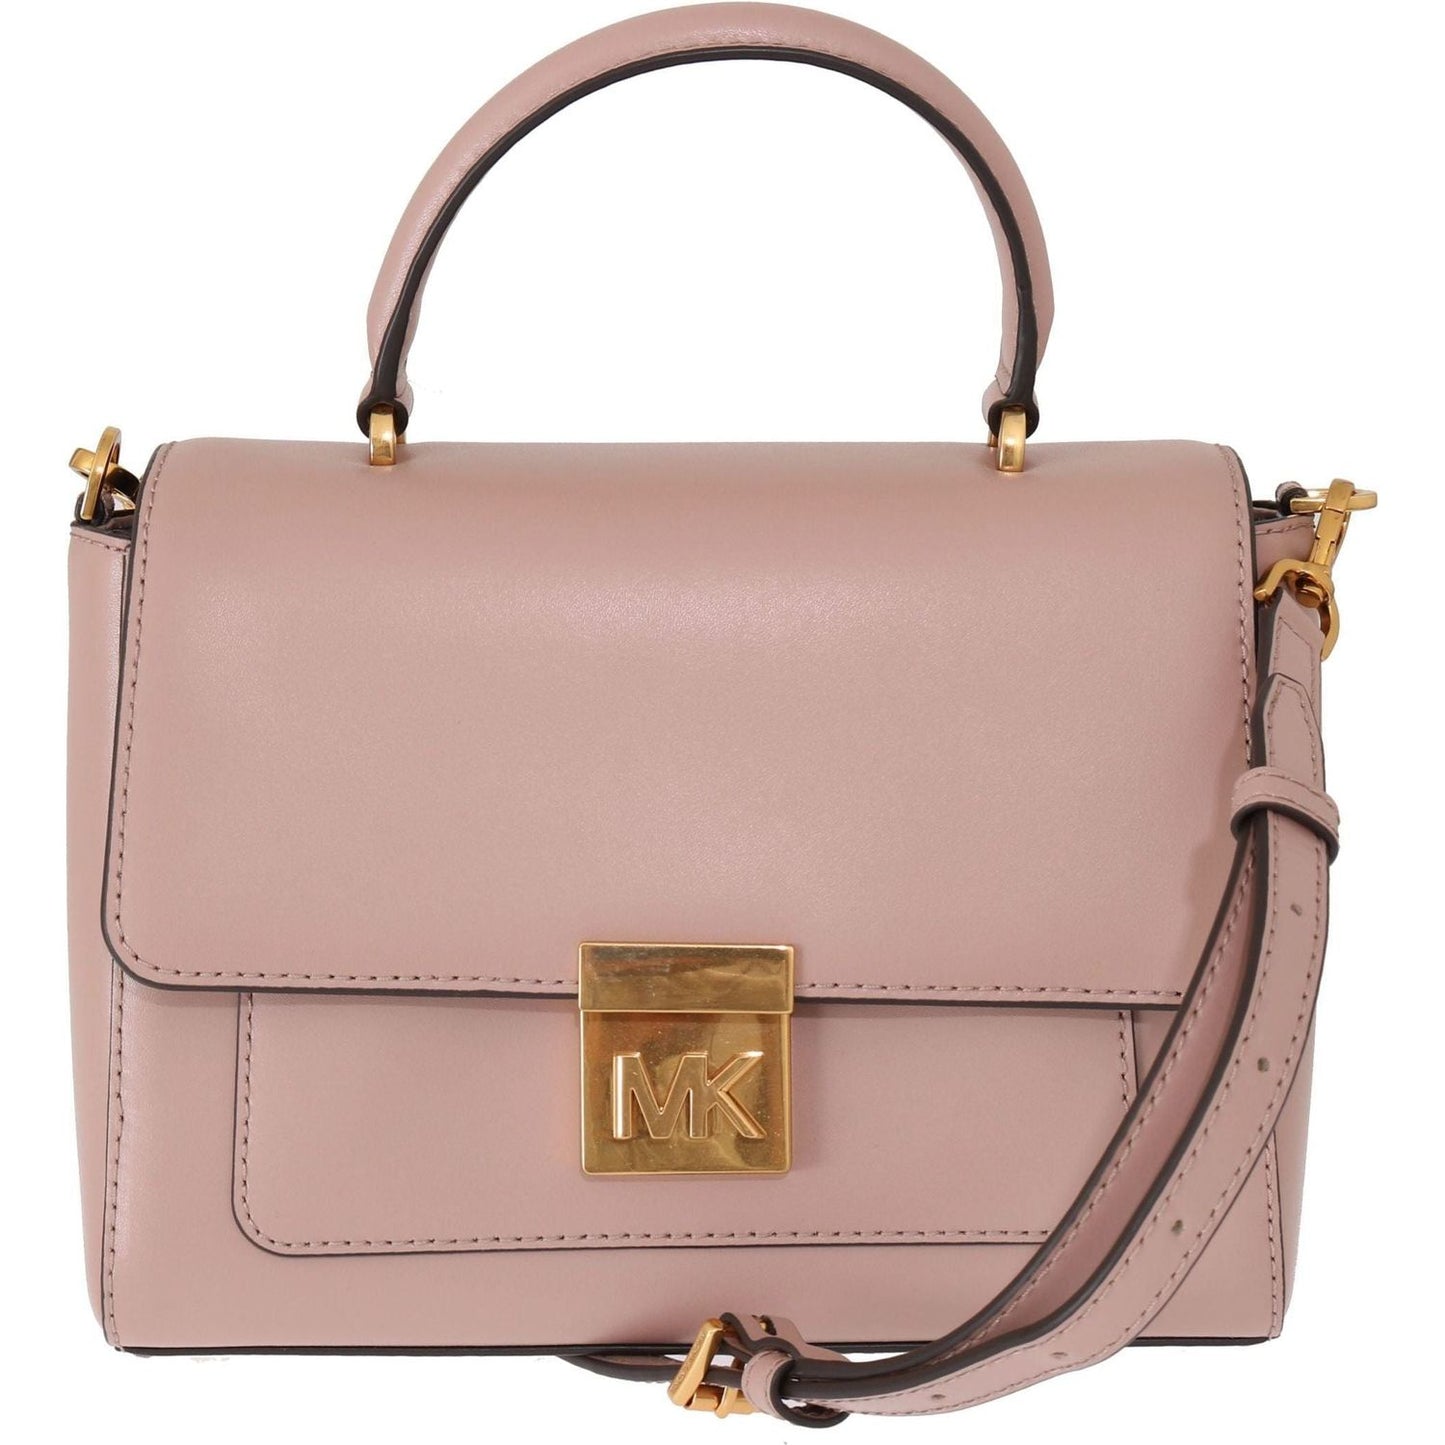 Michael Kors Elegant Pink Leather Mindy Shoulder Bag pink-mindy-leather-shoulder-bag WOMAN HANDBAG IMG_8912-scaled-275af562-6a4.jpg